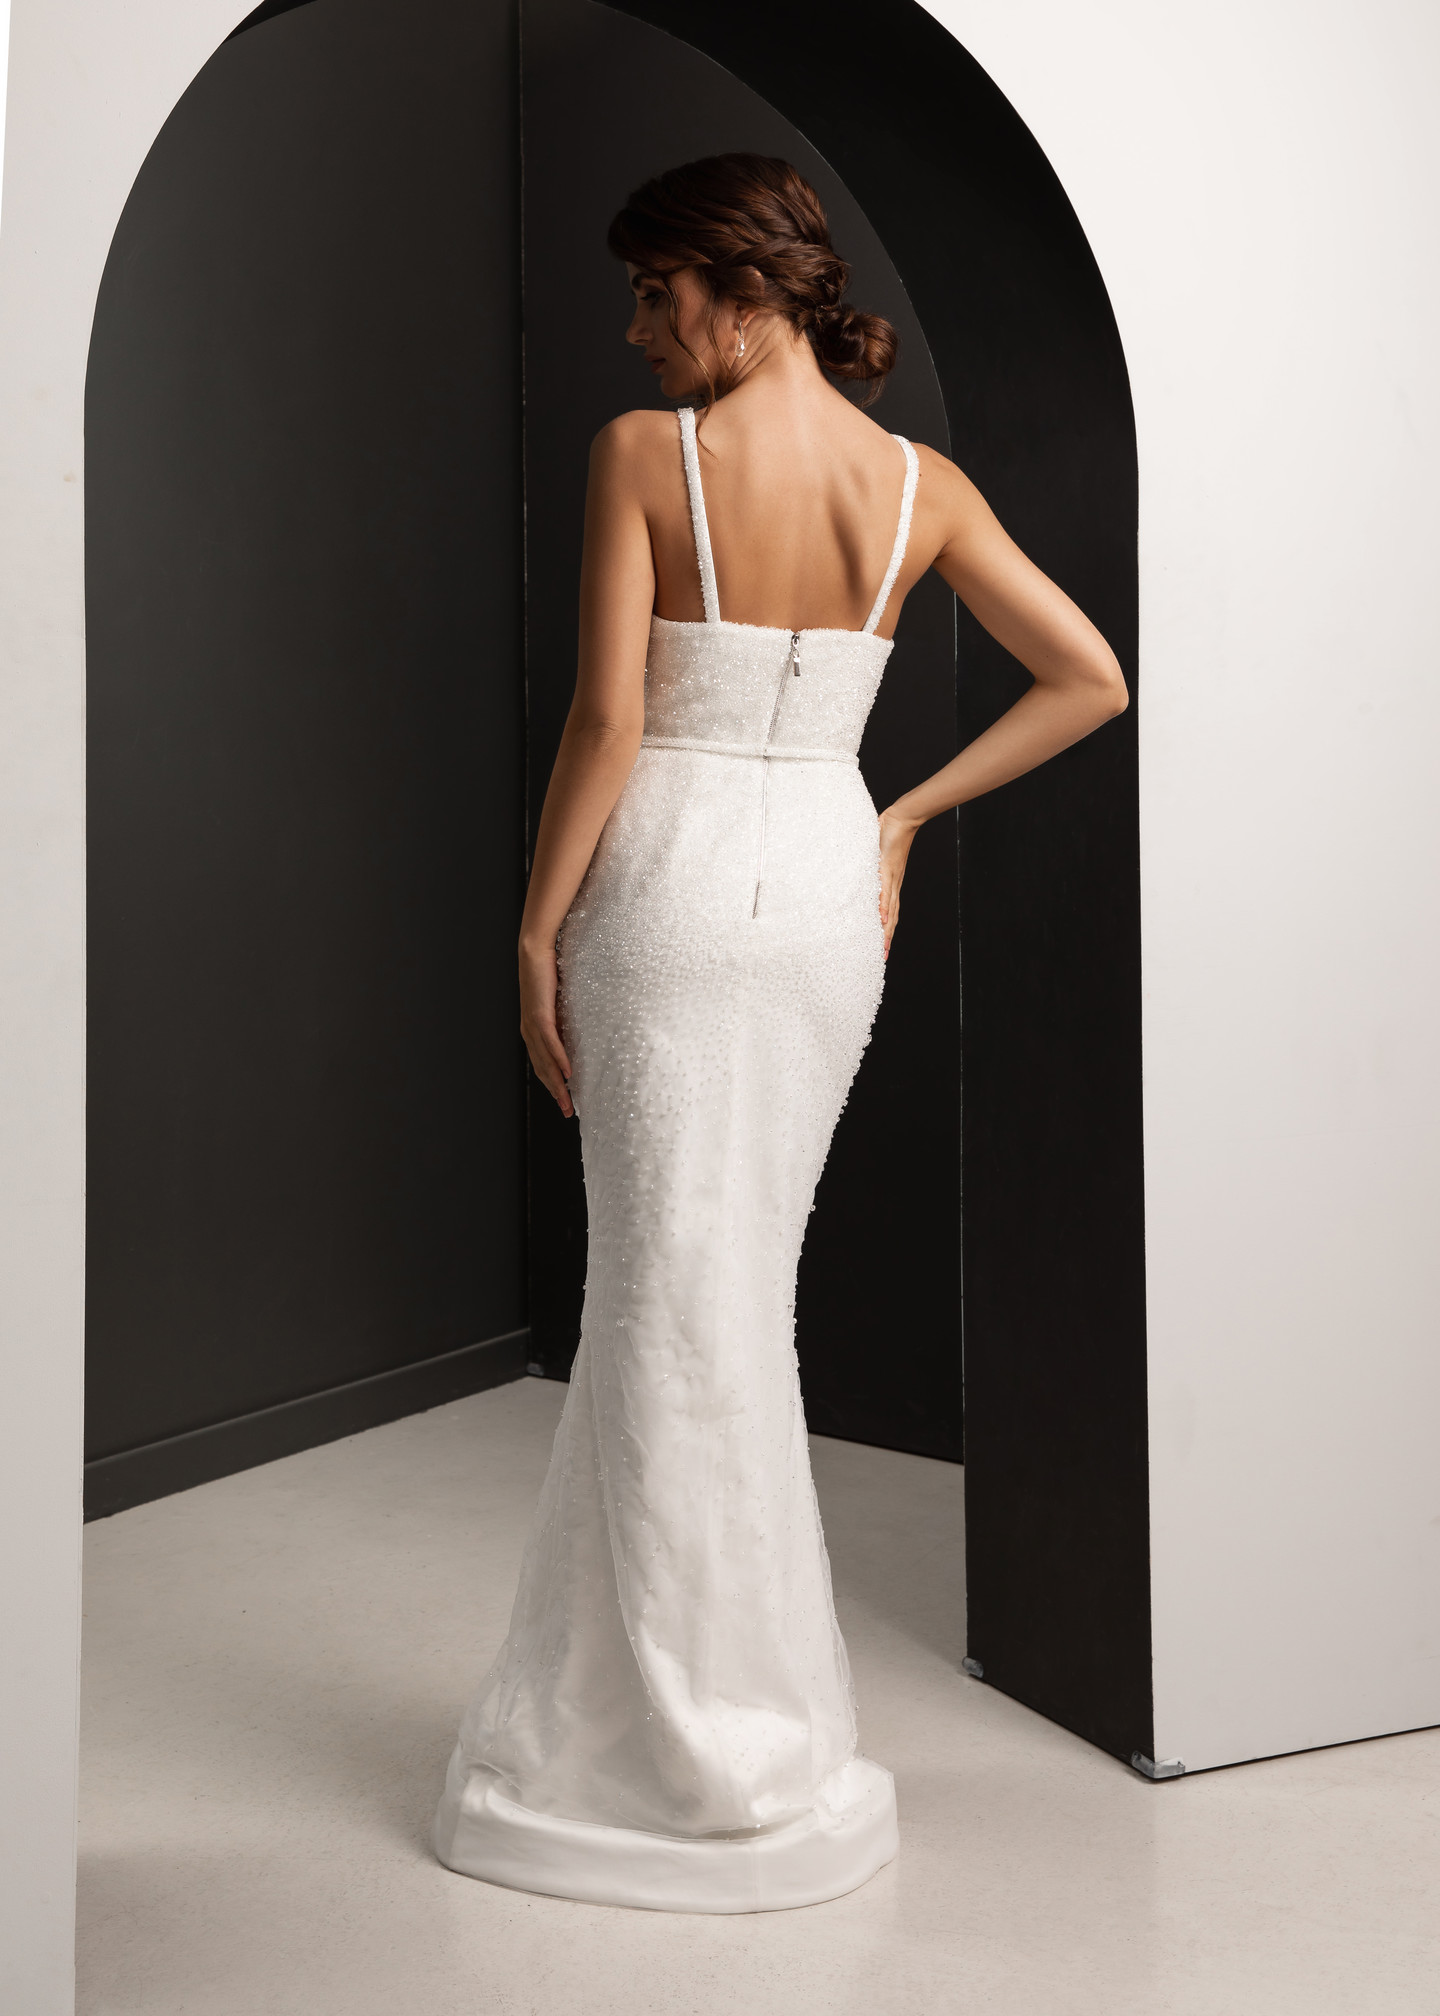 Платье Доминика, 2021, одежда, платье, свадебное, молочно-белый, вышивка, прямой силуэт